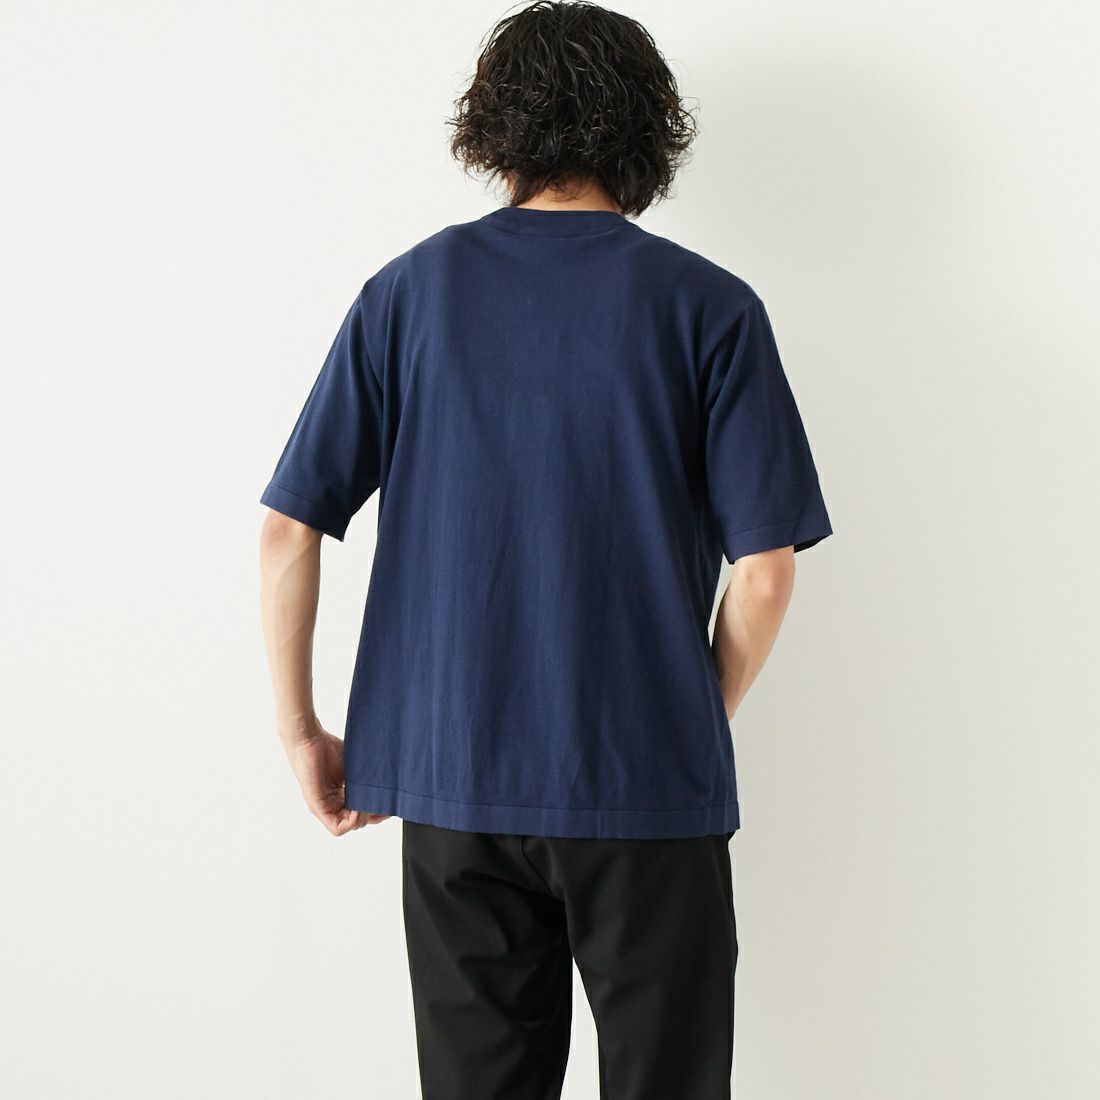 LACOSTE [ラコステ] リラックスフィットニットTシャツ [TH089] 166 NAVY B &&モデル身長：182cm 着用サイズ：L&&